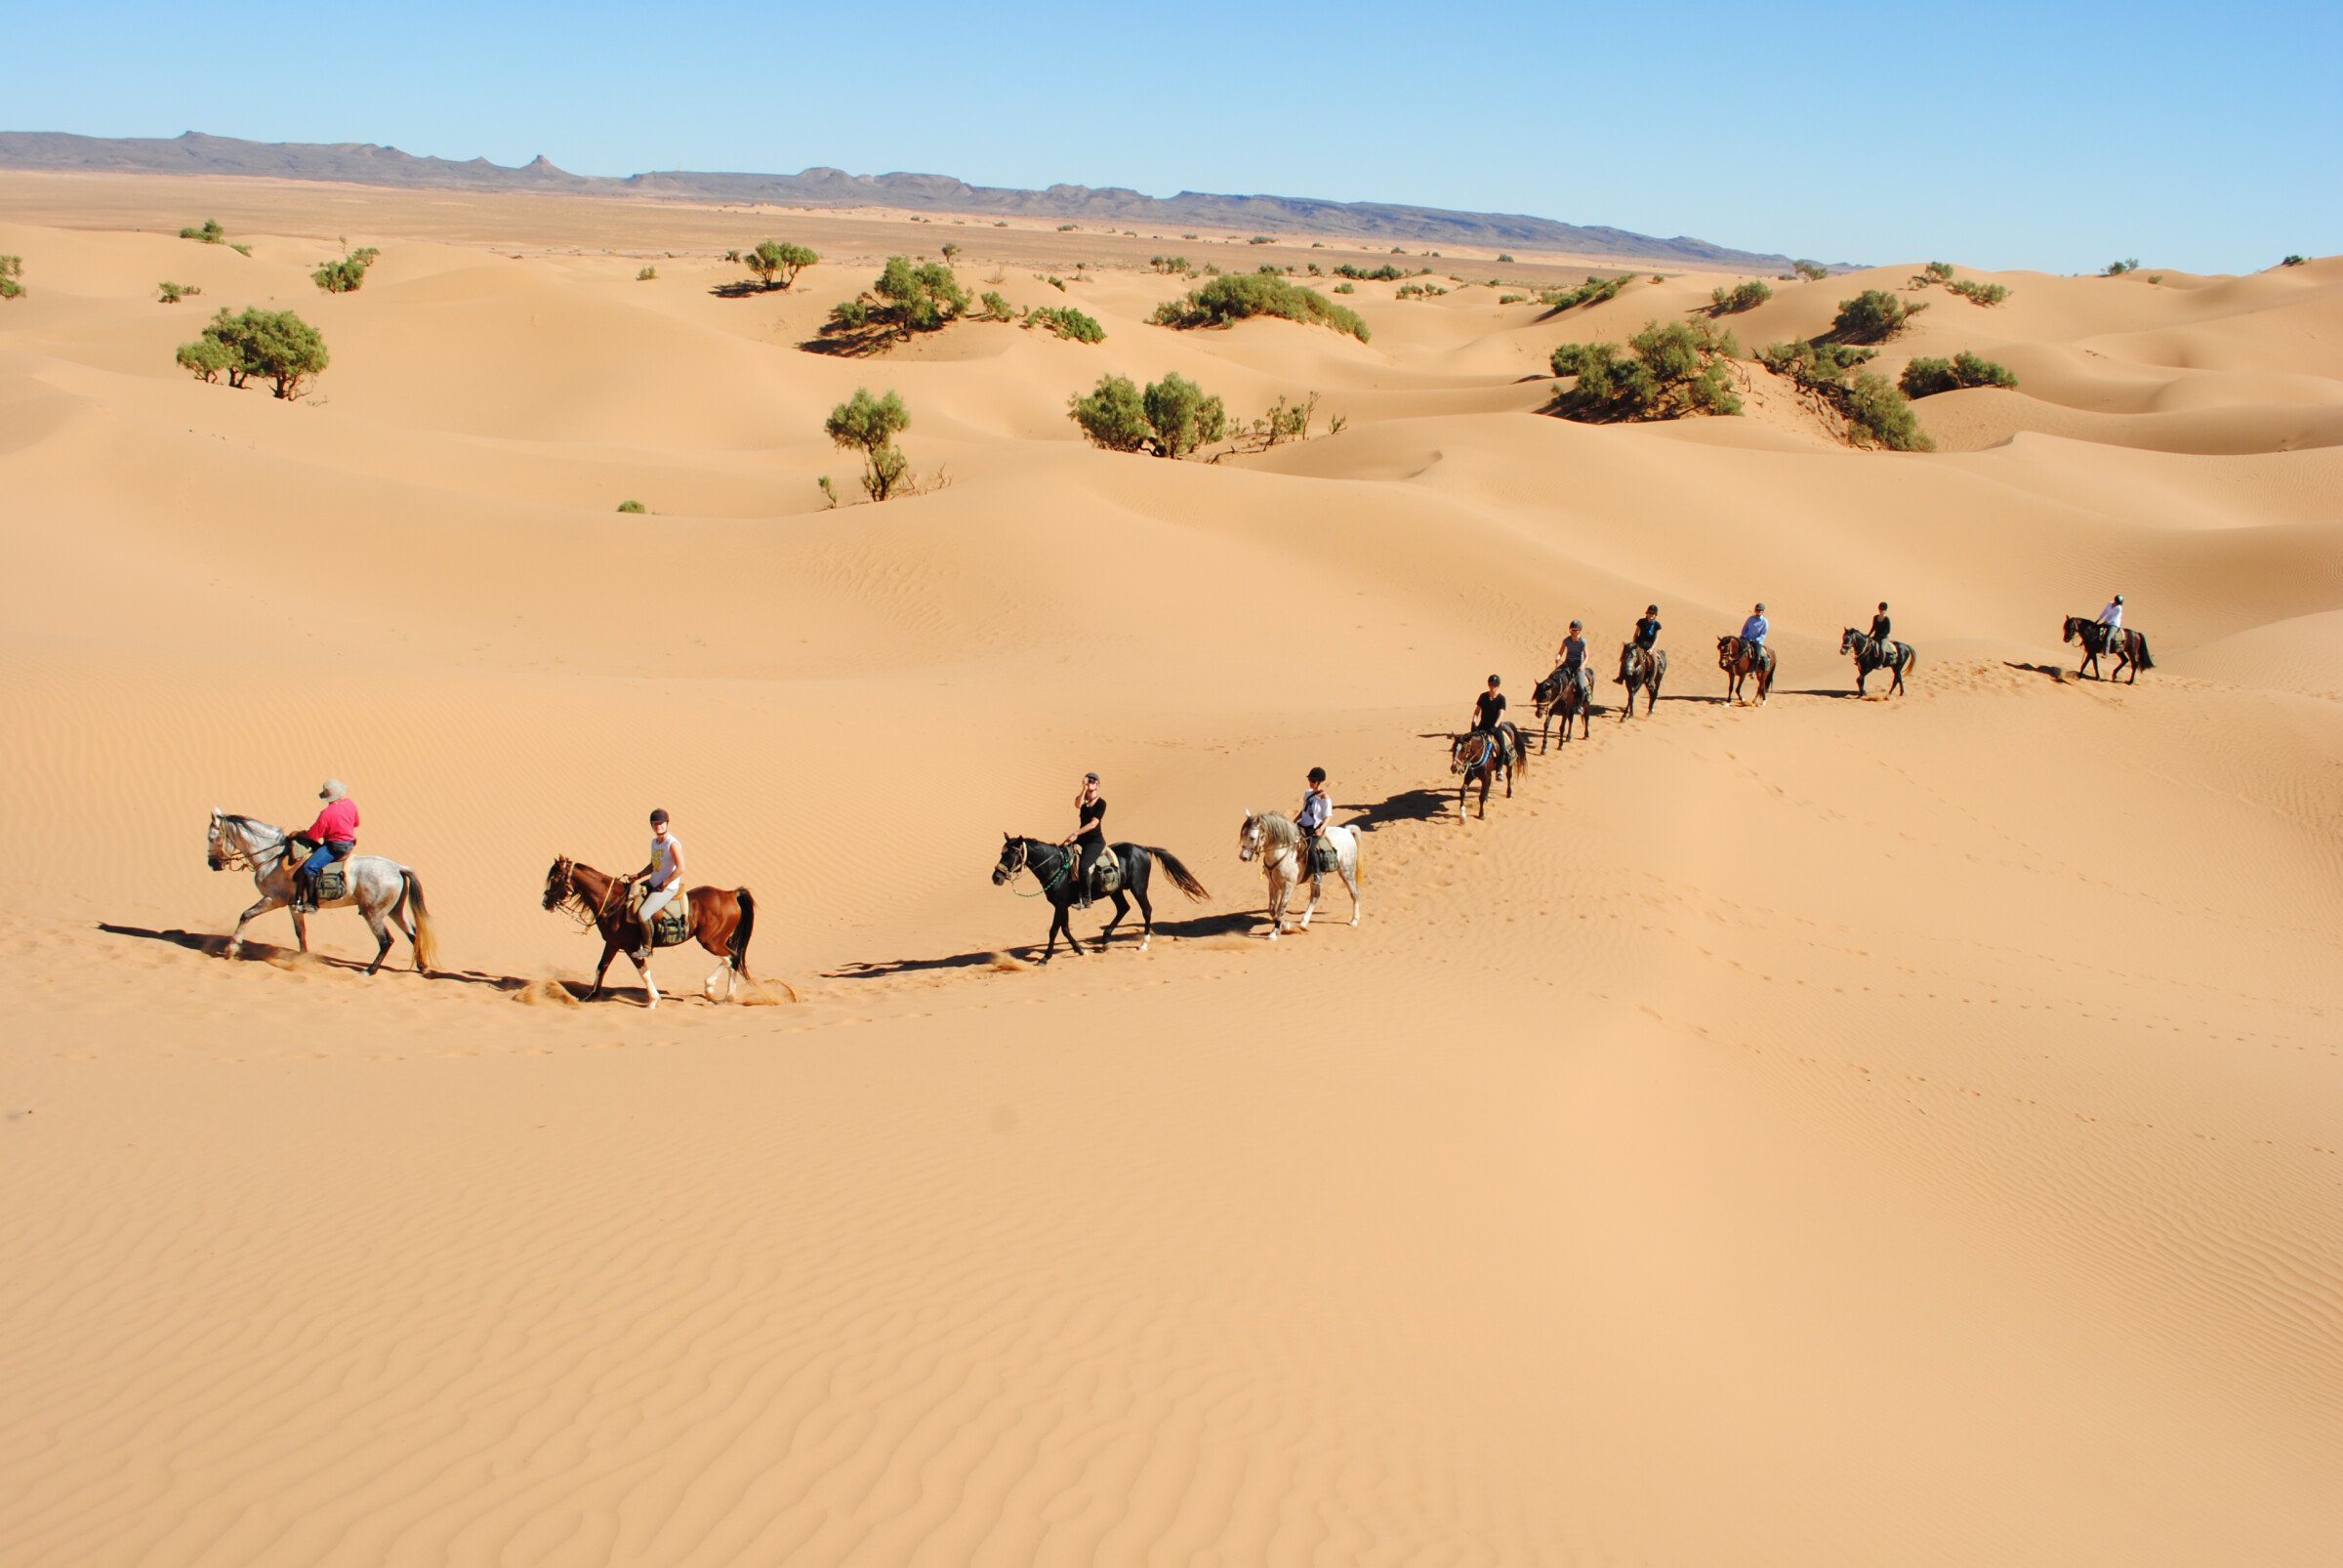 Les bienfaits d'une balade à cheval : trekking dans le désert